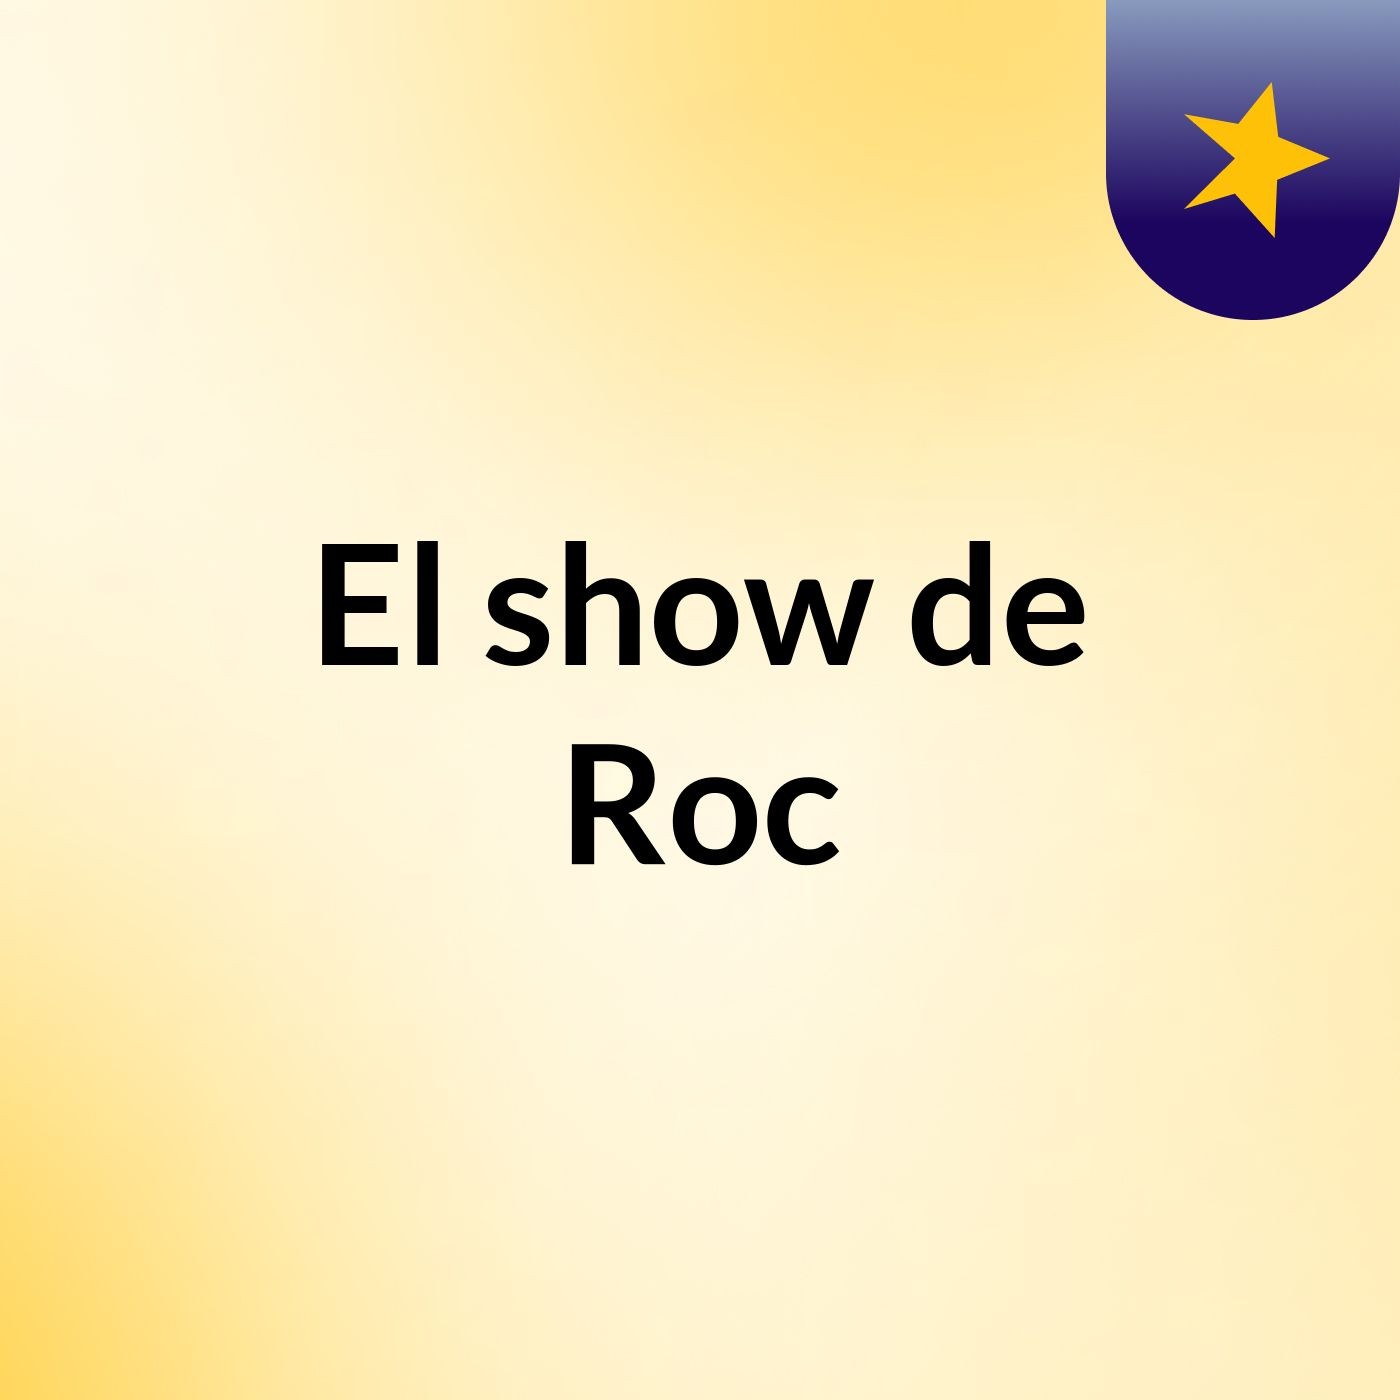 El show de Roc